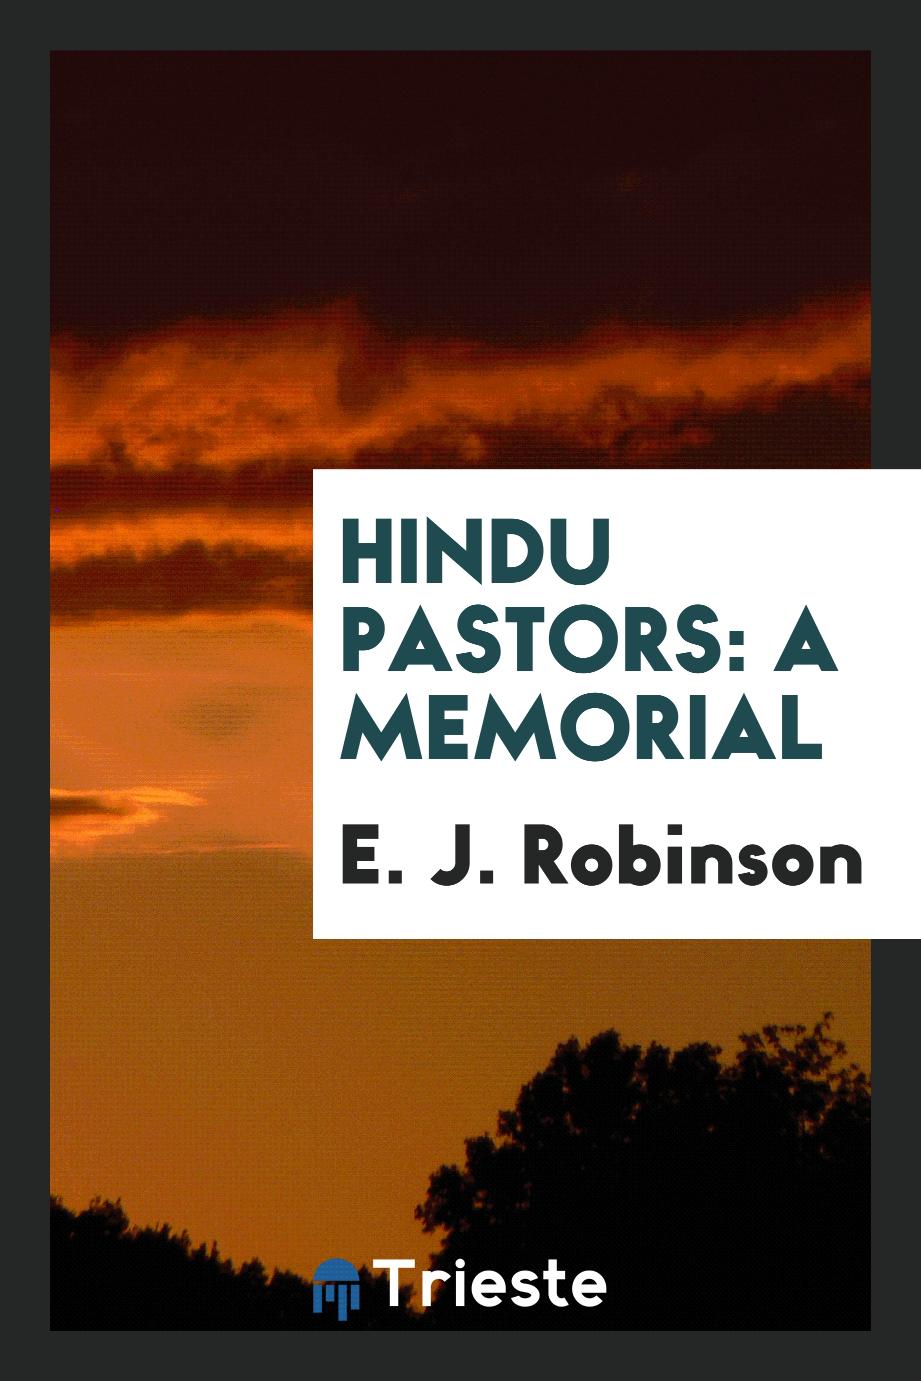 Hindu Pastors: A Memorial